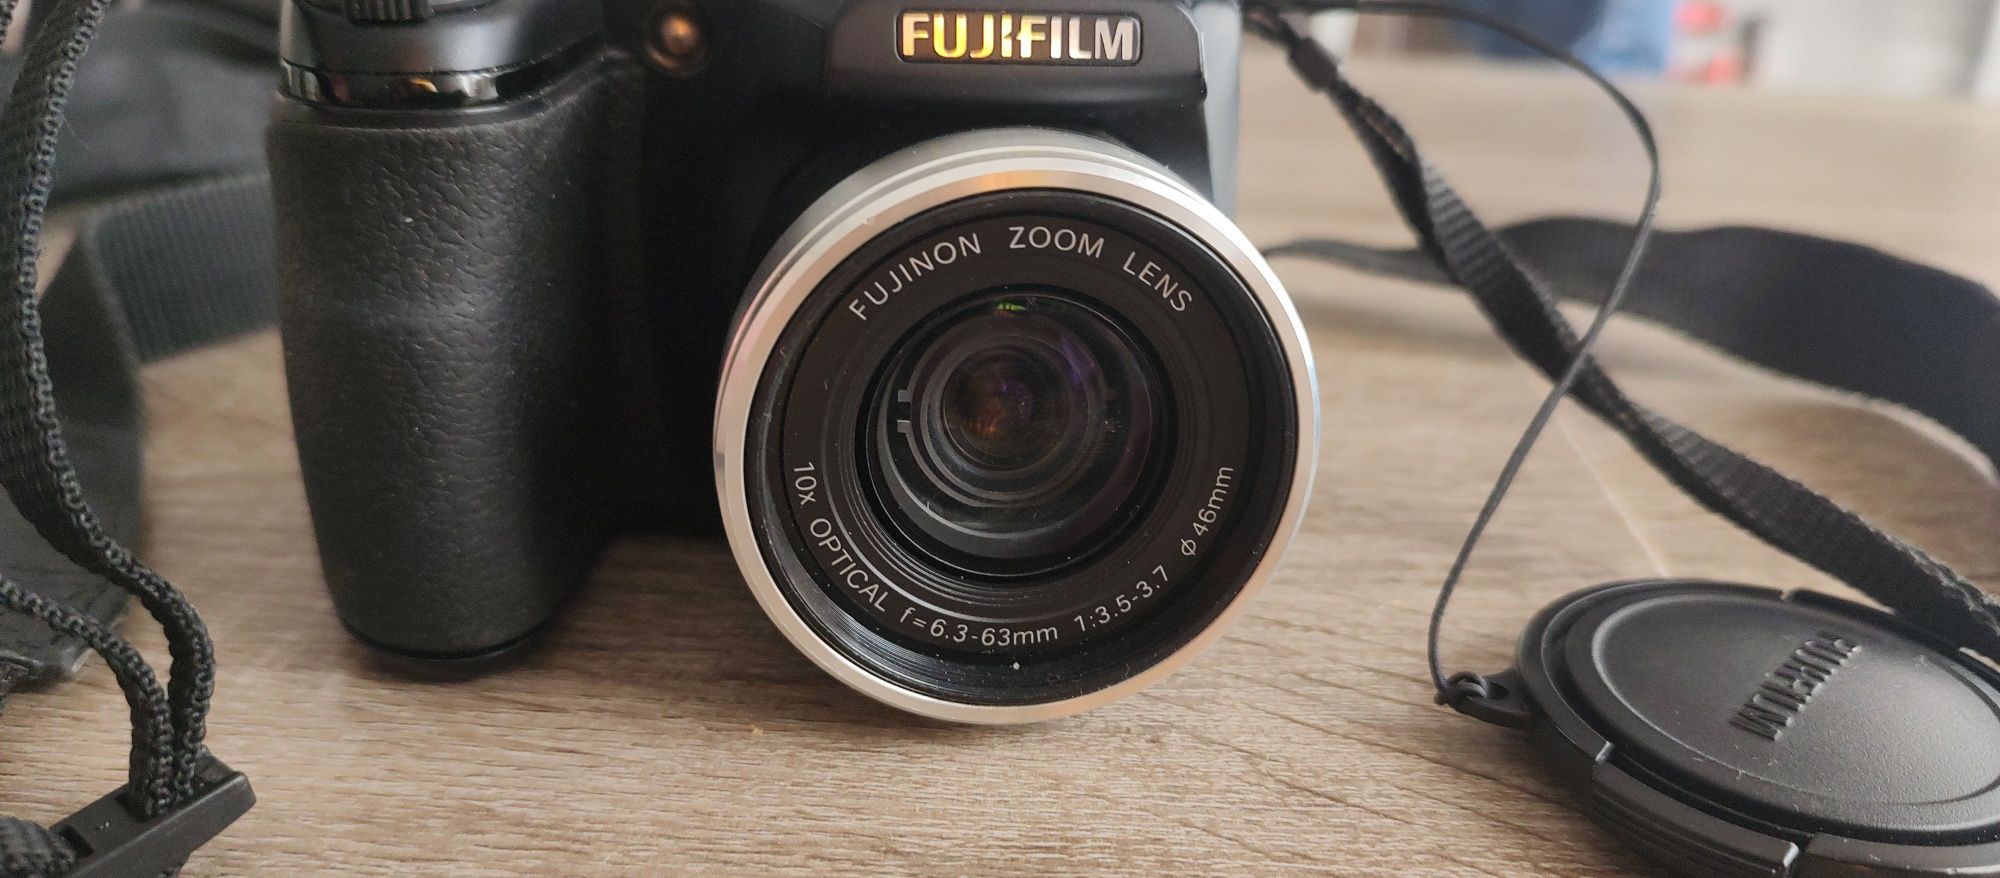 Aparat Fujifilm finePix s5700